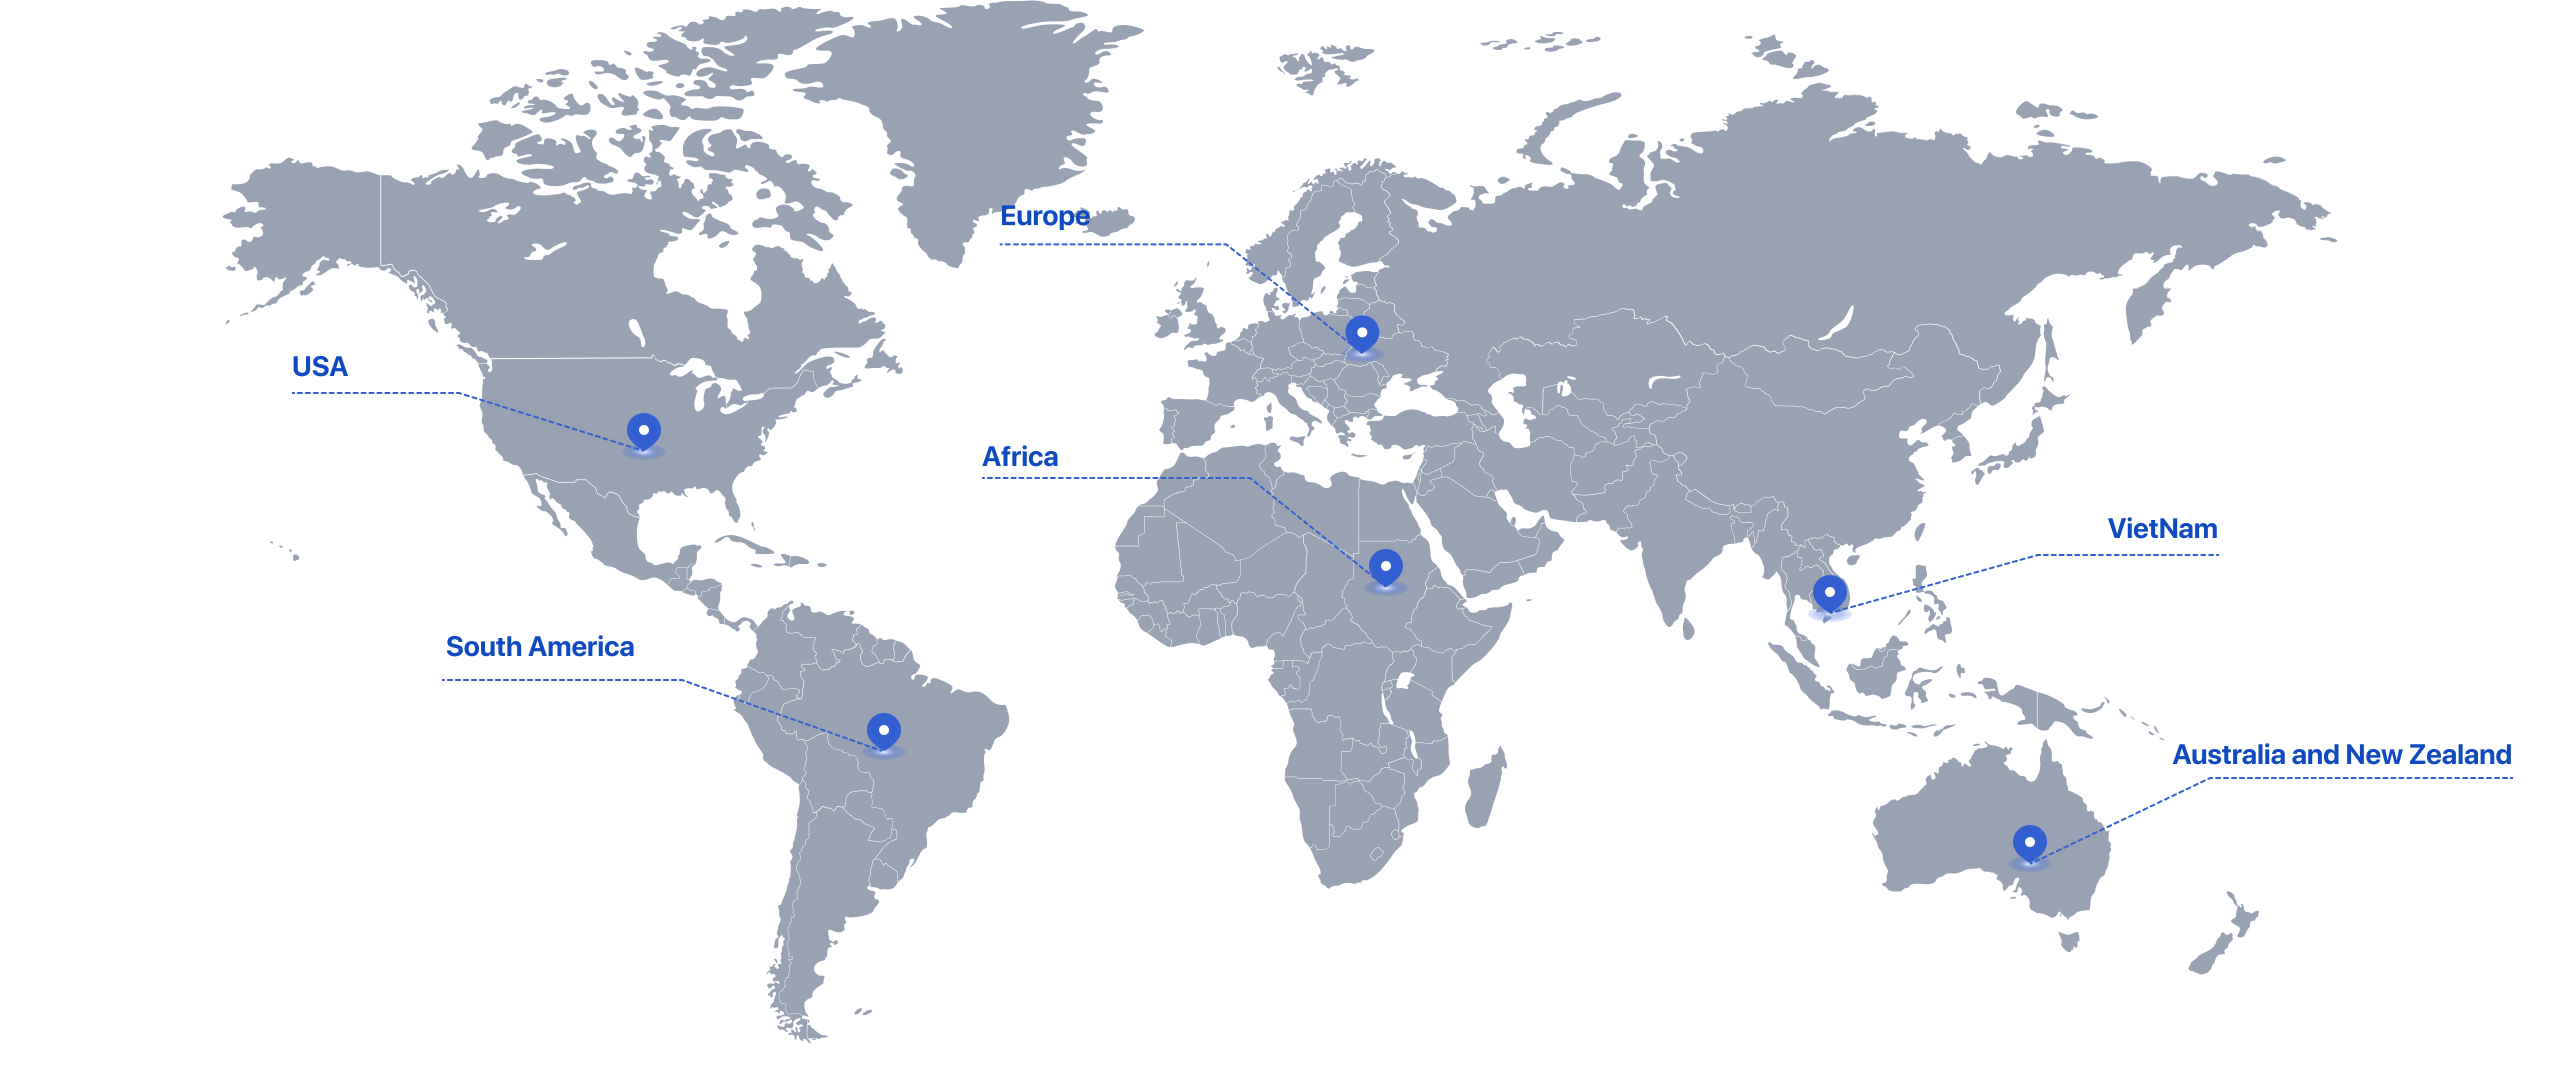 Mạng lưới đối tác toàn cầu